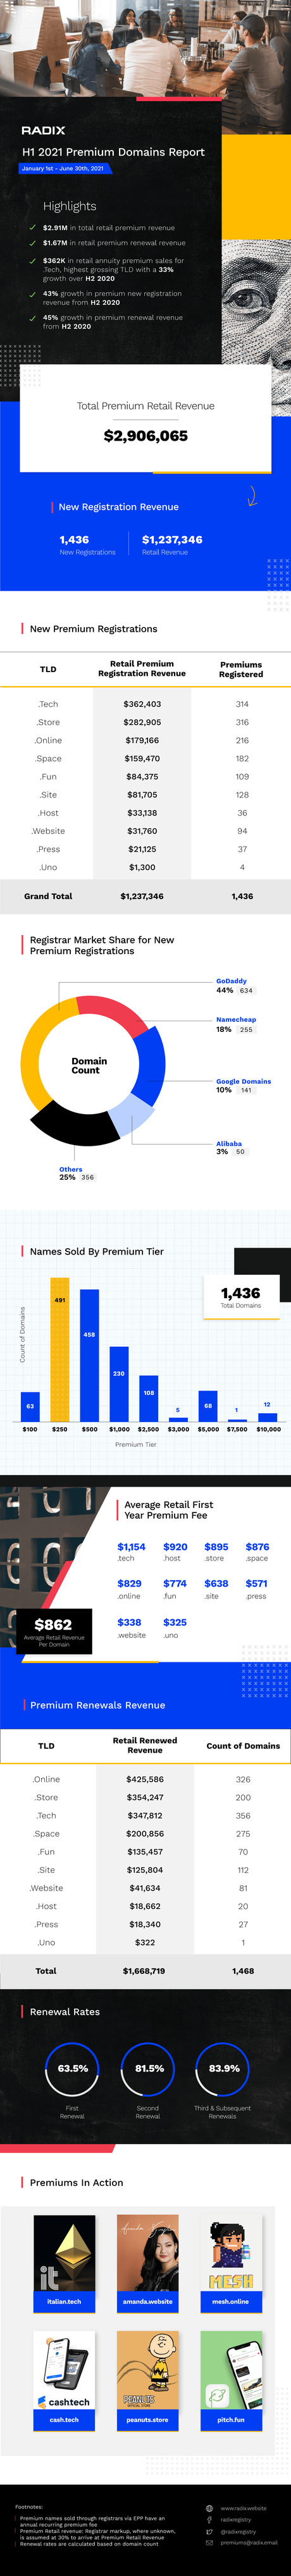 Radix H1 2021 Premium Domains Report – $2.91M in retail premium revenue